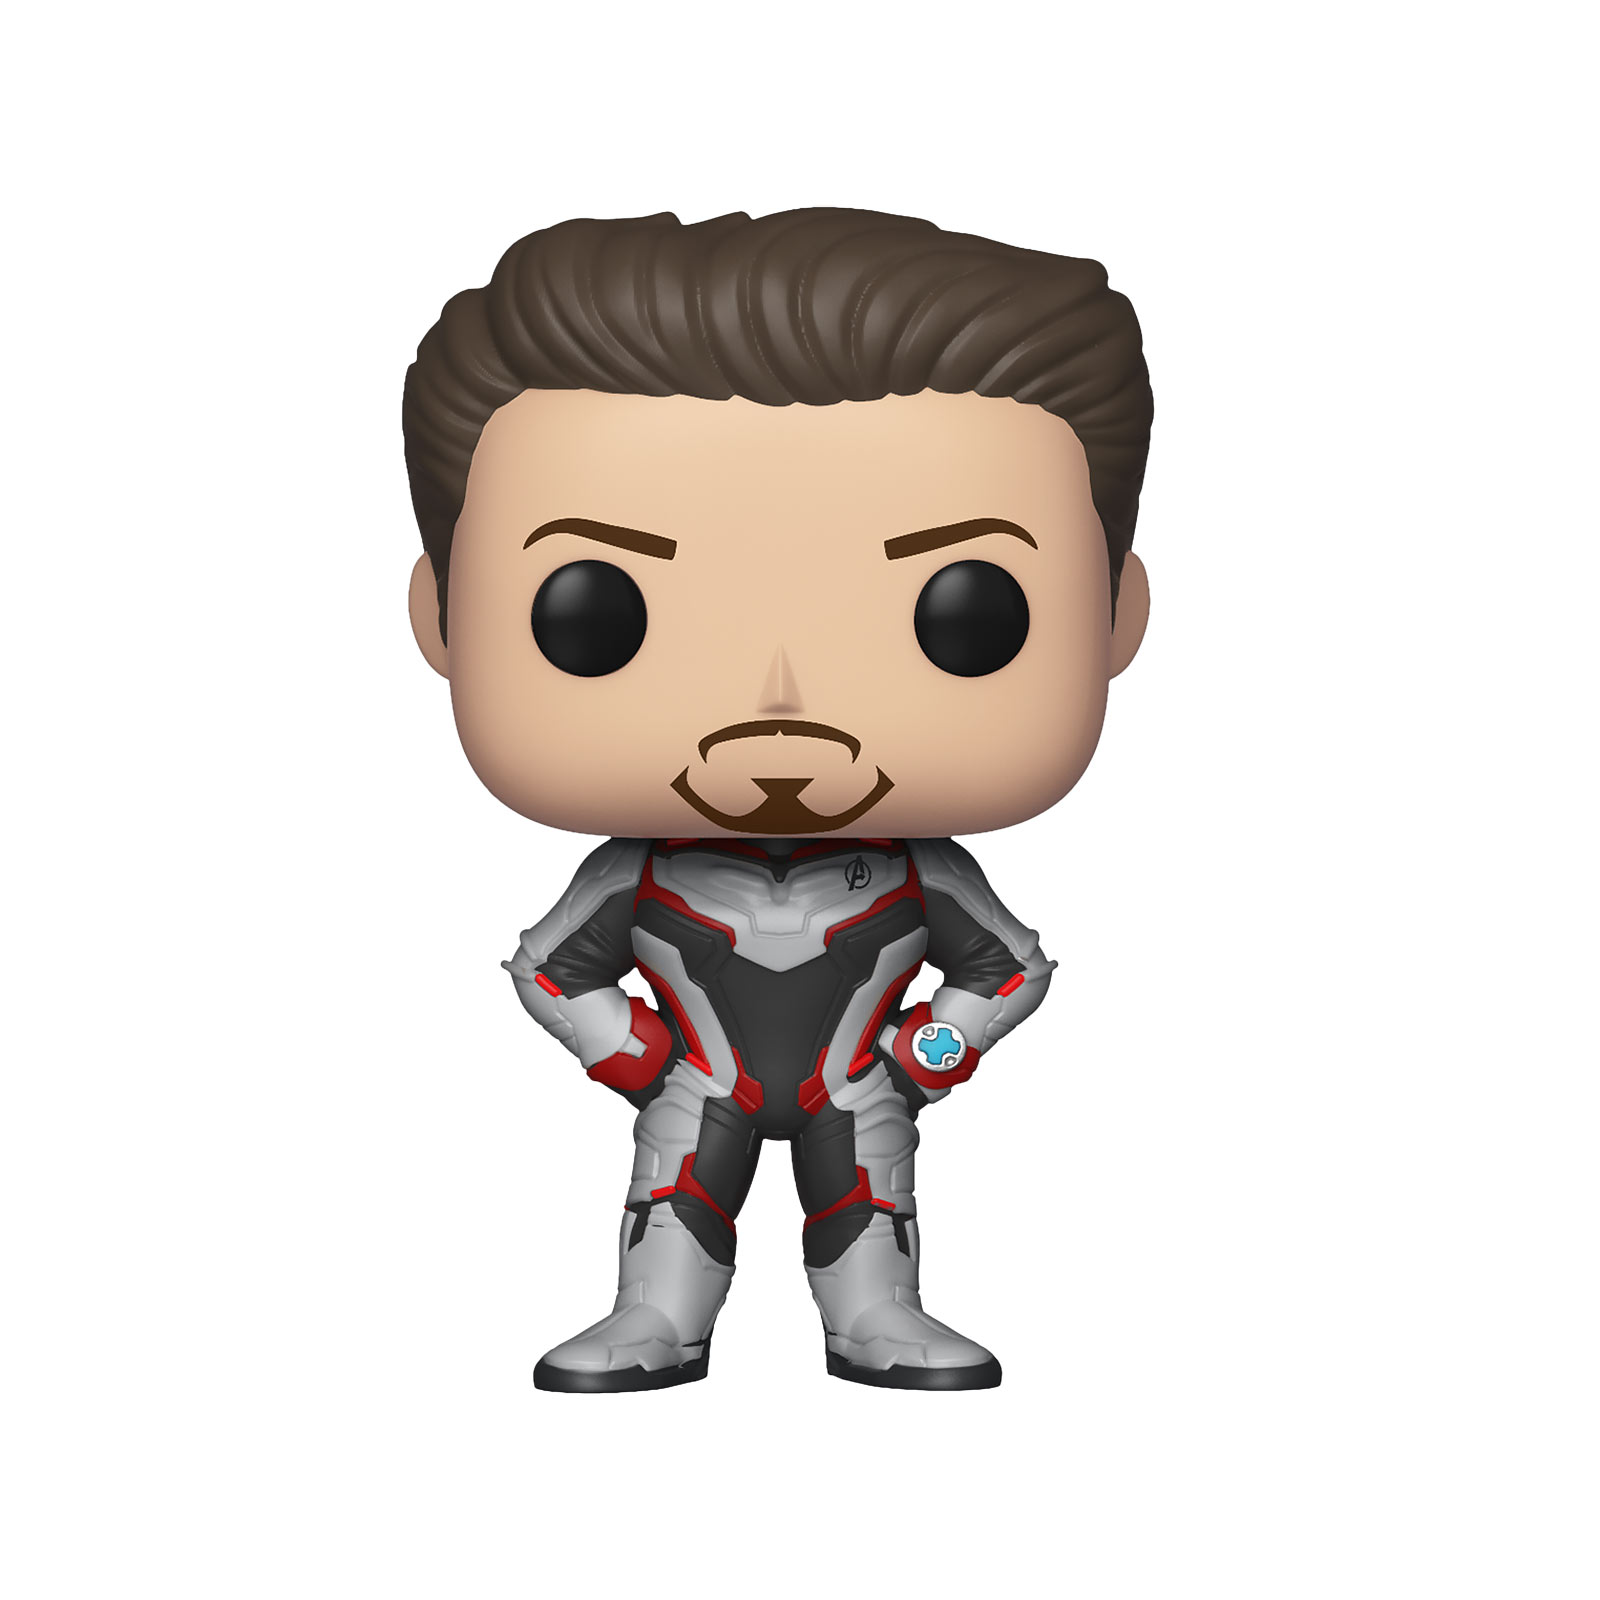 Avengers - Tony Stark Endgame Funko Pop Wackelkopf-Figur